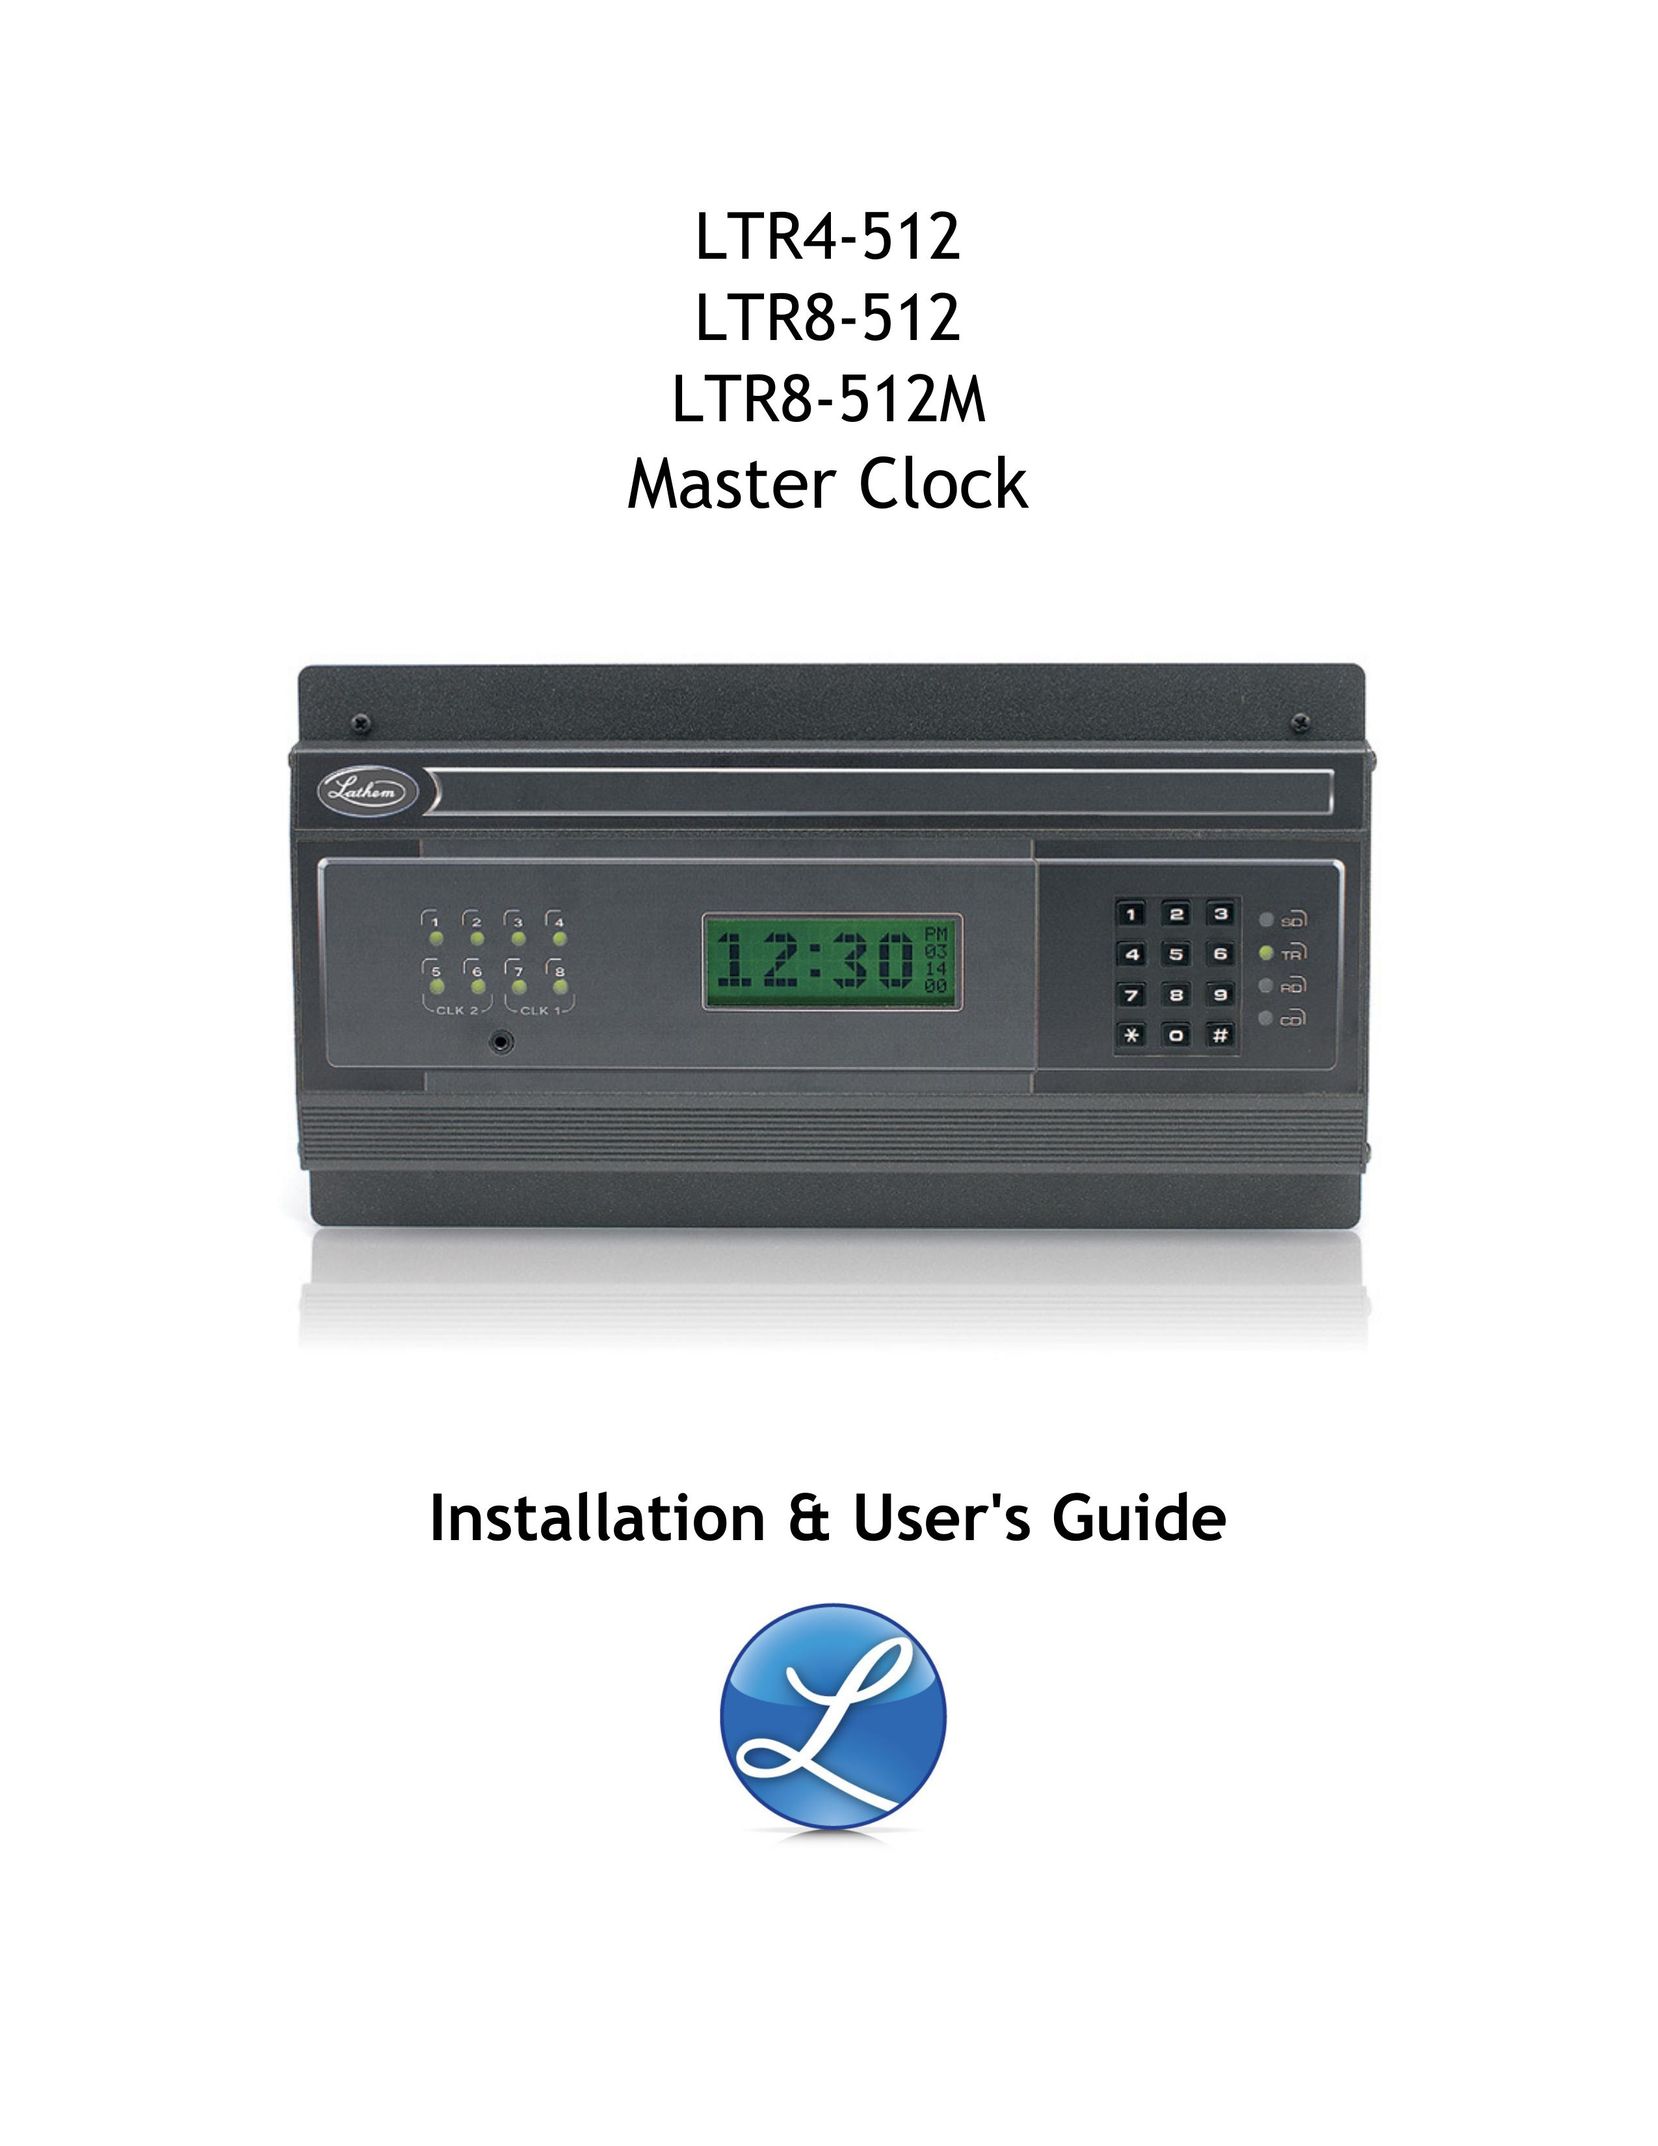 Master Lock LTR4-512 Clock User Manual